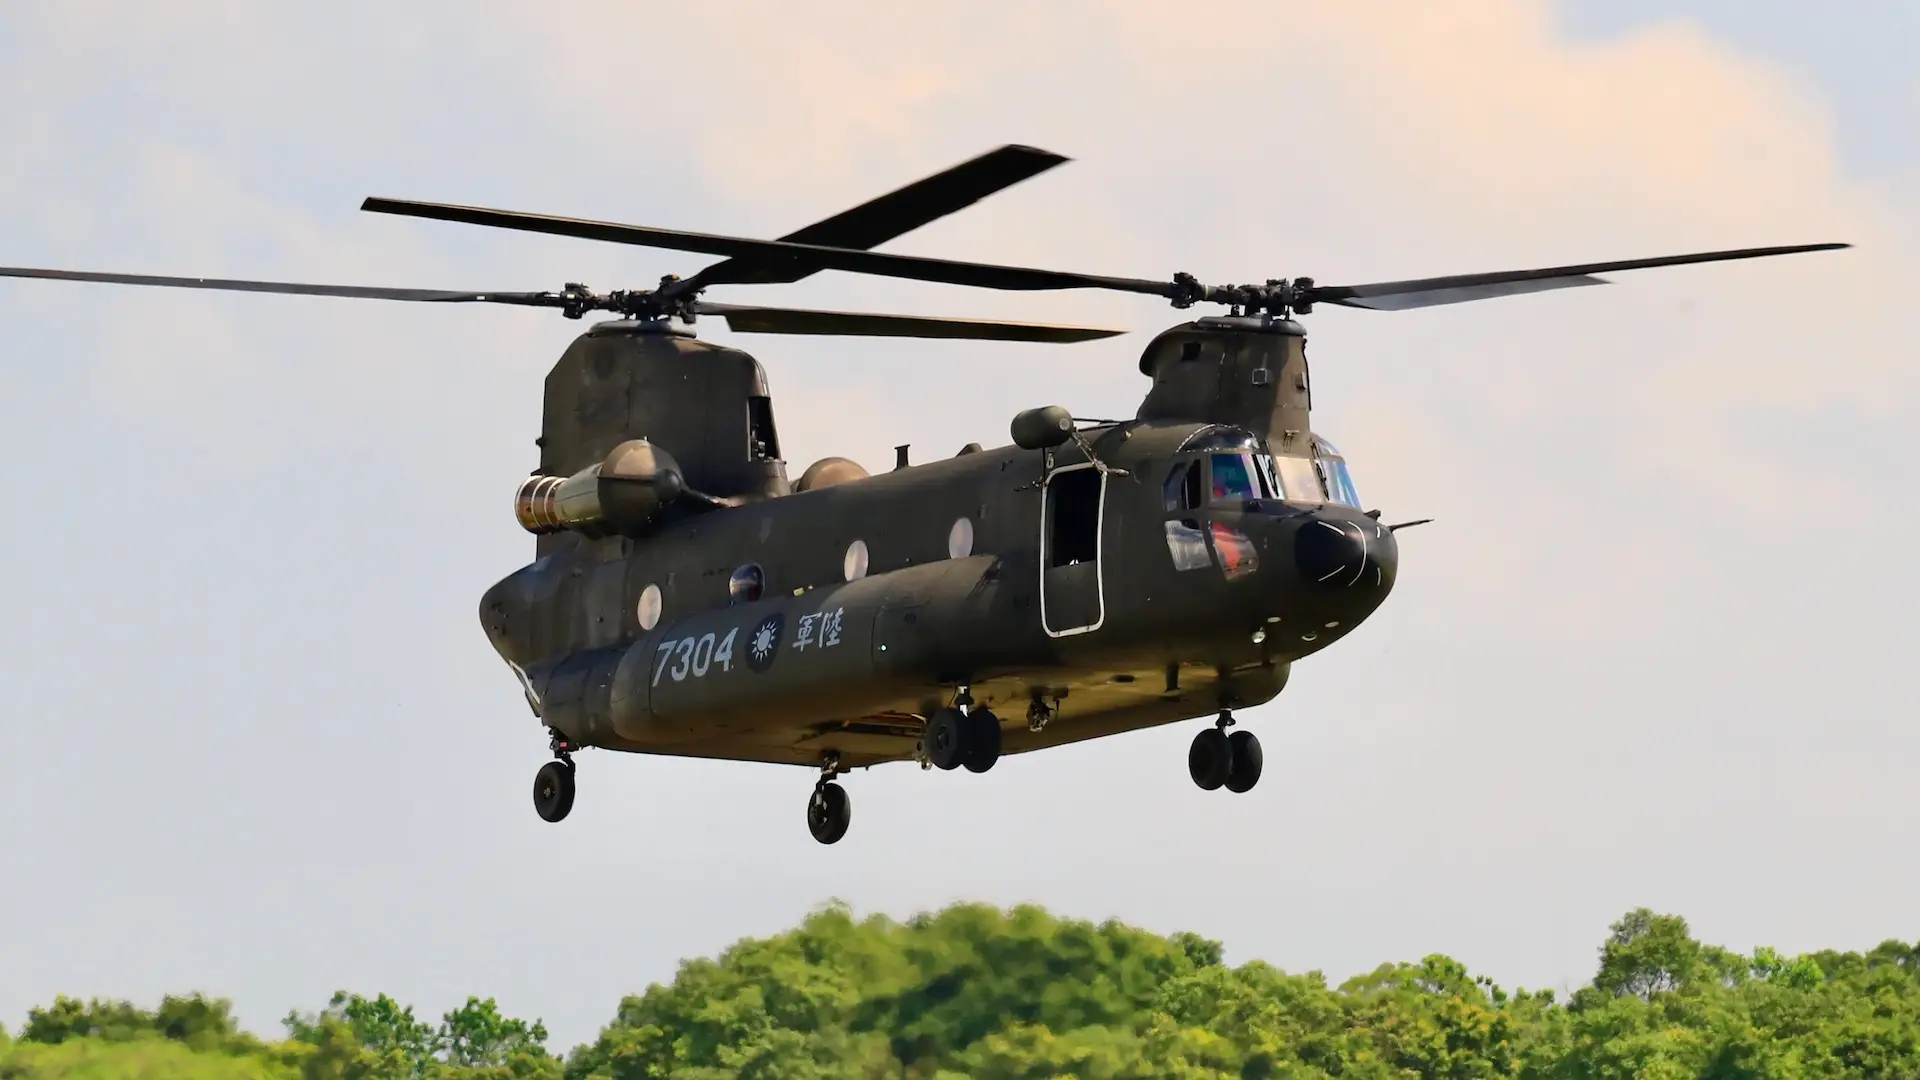 En taiwanesisk pilot försökte kapa en amerikansk CH-47 Chinook-helikopter till Kina för en belöning på 15 miljoner dollar